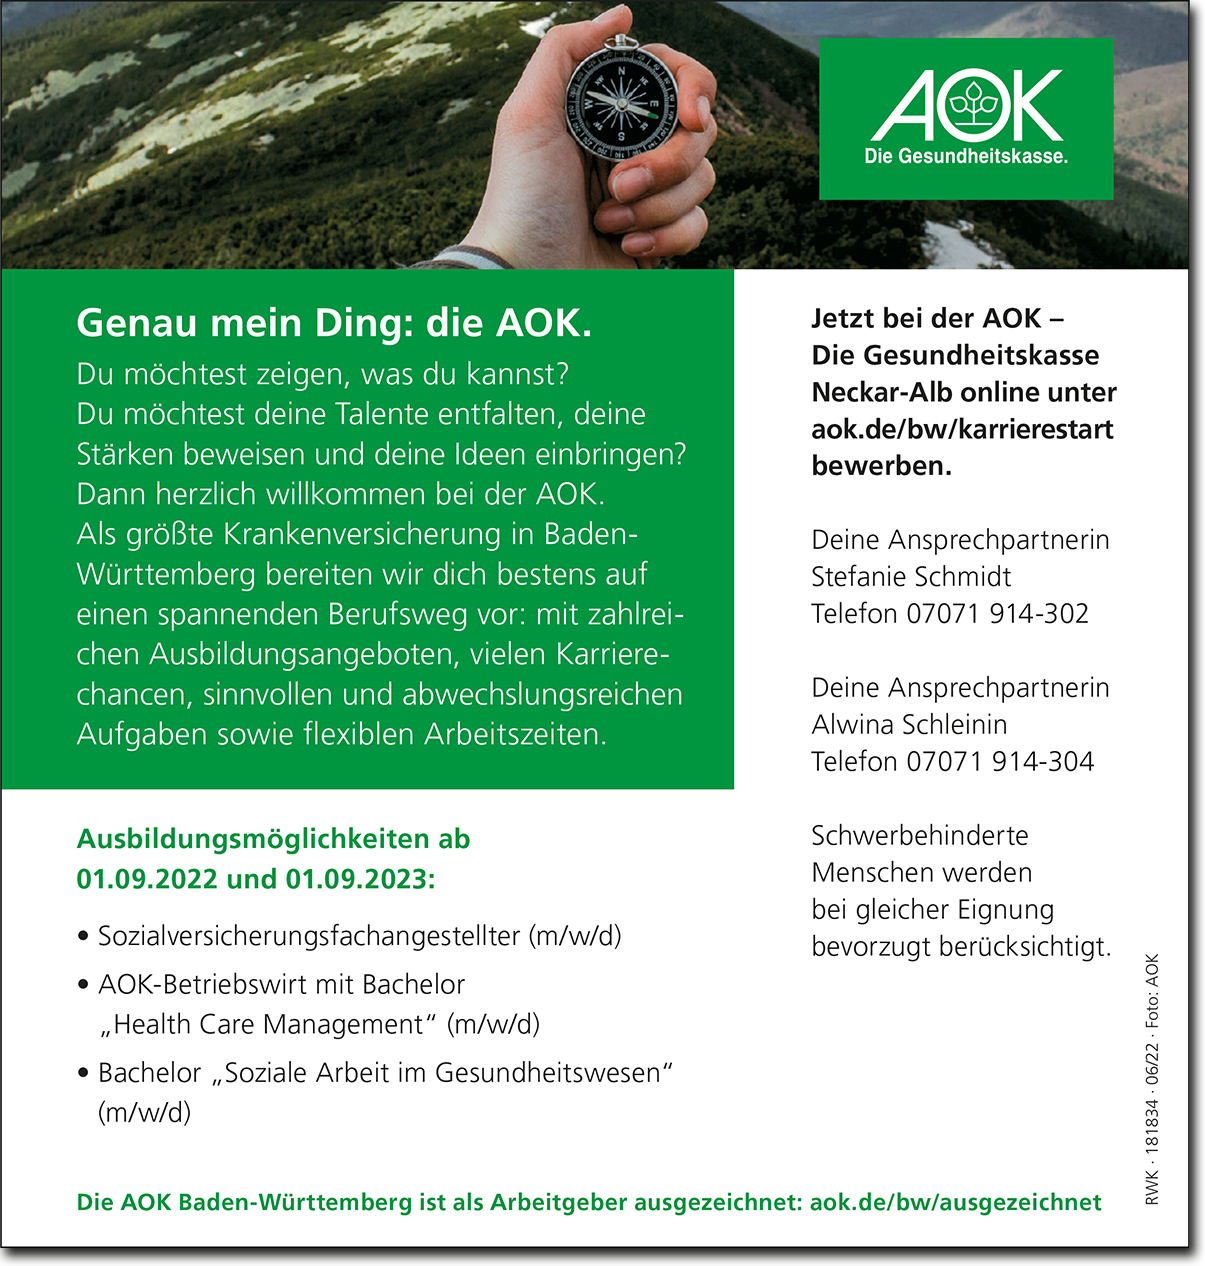 AOK - Die Gesundheitskasse Neckar-Alb